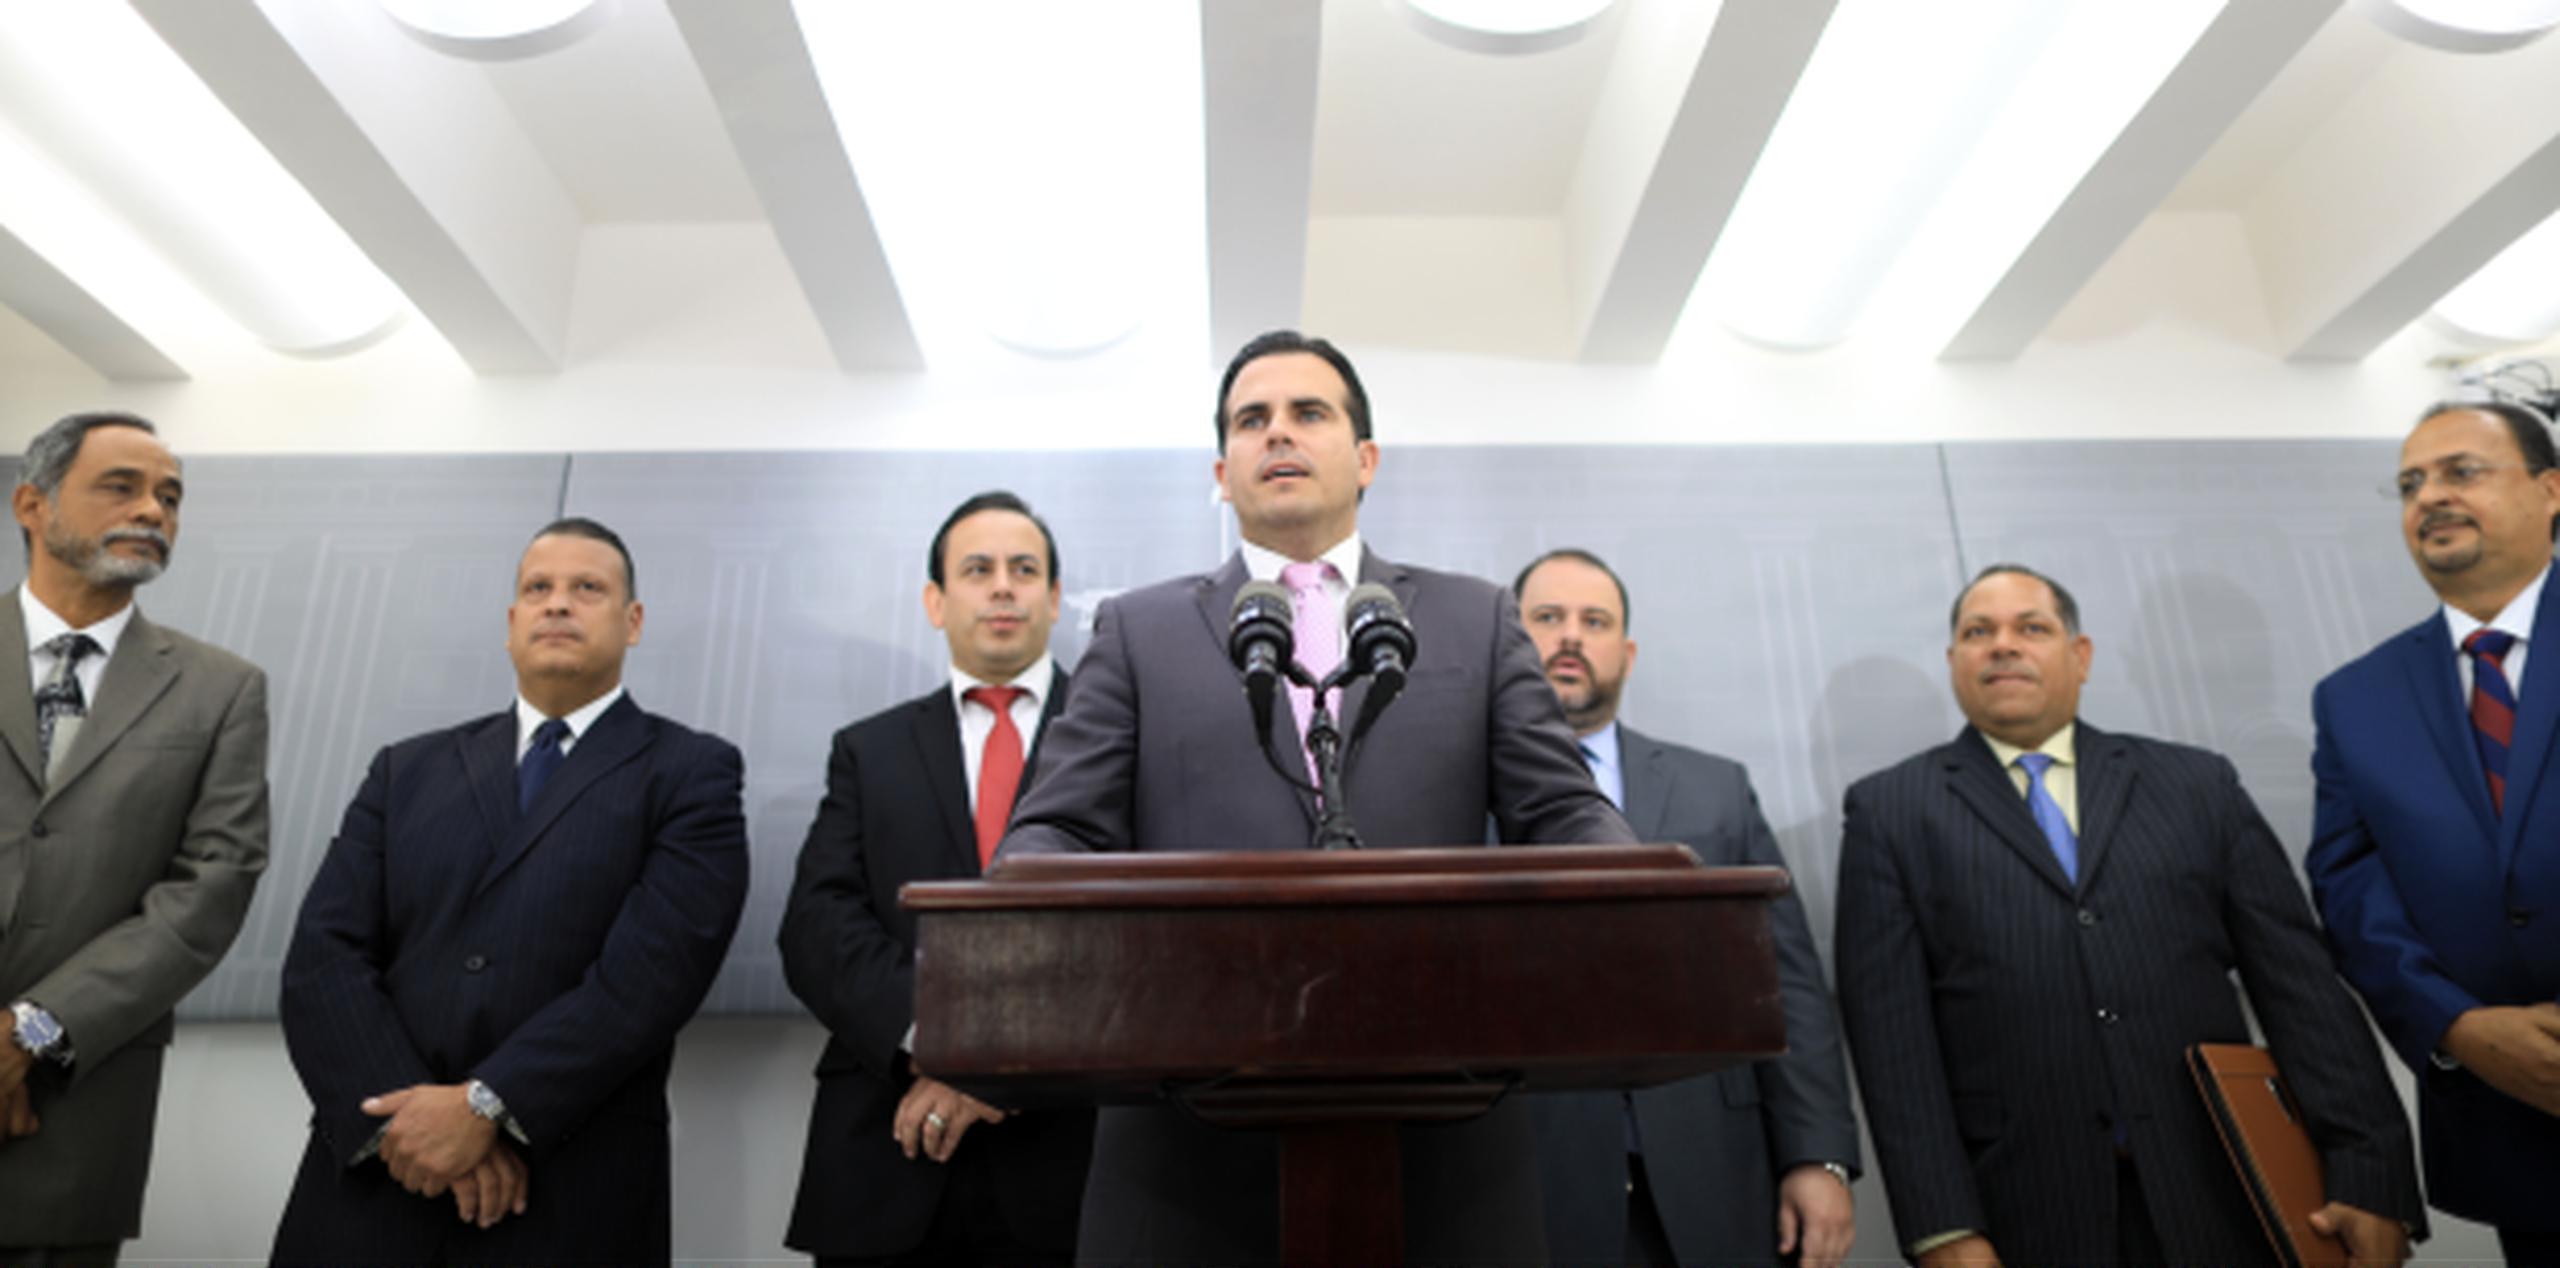 El gobernador Ricardo Rosselló presentó a los cinco nominados en una breve conferencia de prensa. (xavier.araujo@gfrmedia.com)